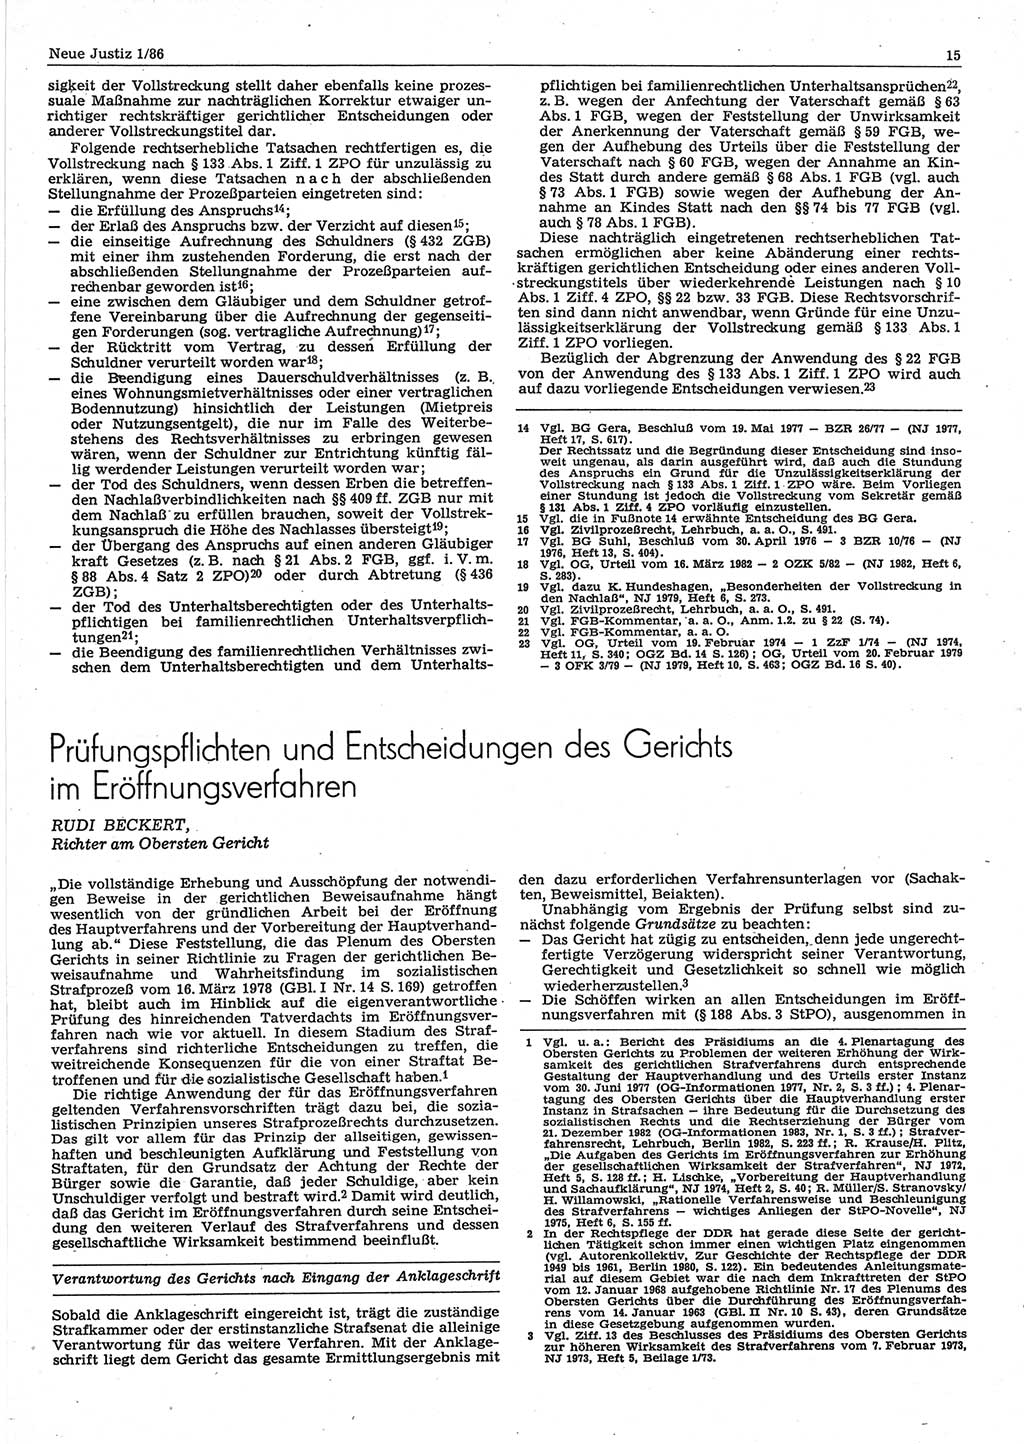 Neue Justiz (NJ), Zeitschrift für sozialistisches Recht und Gesetzlichkeit [Deutsche Demokratische Republik (DDR)], 40. Jahrgang 1986, Seite 15 (NJ DDR 1986, S. 15)